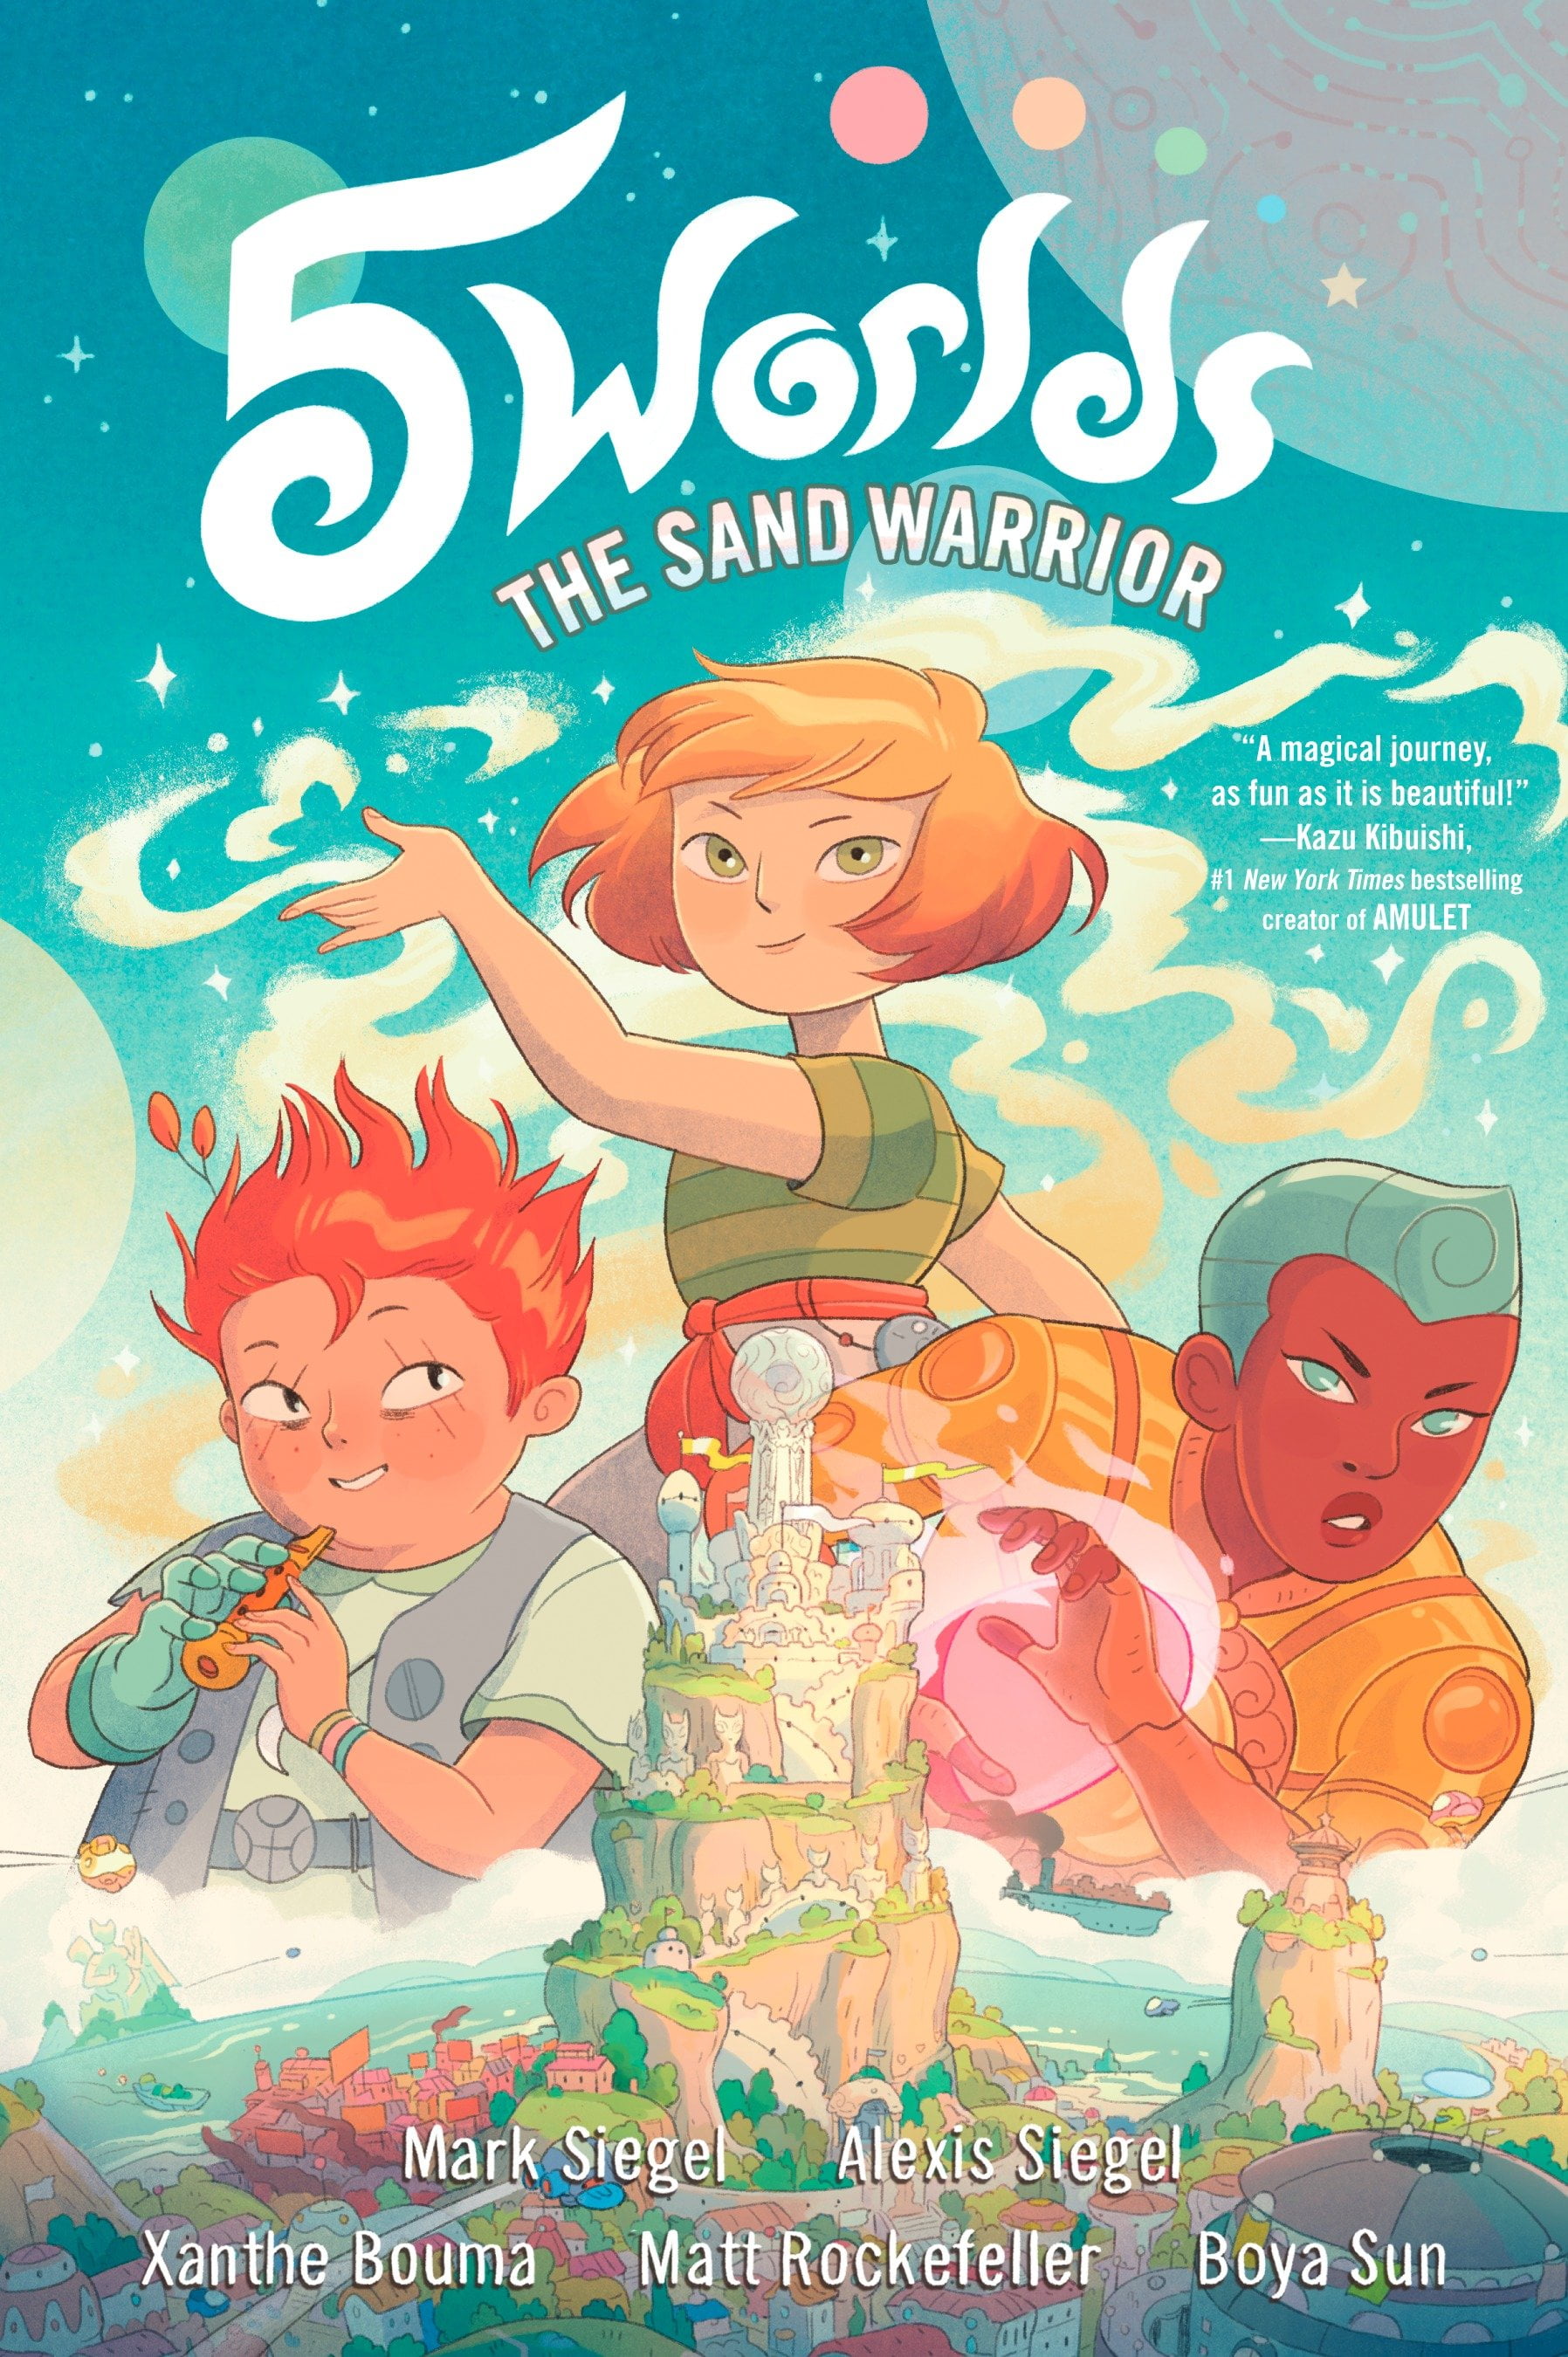 5 worlds book 1 the sand warrior